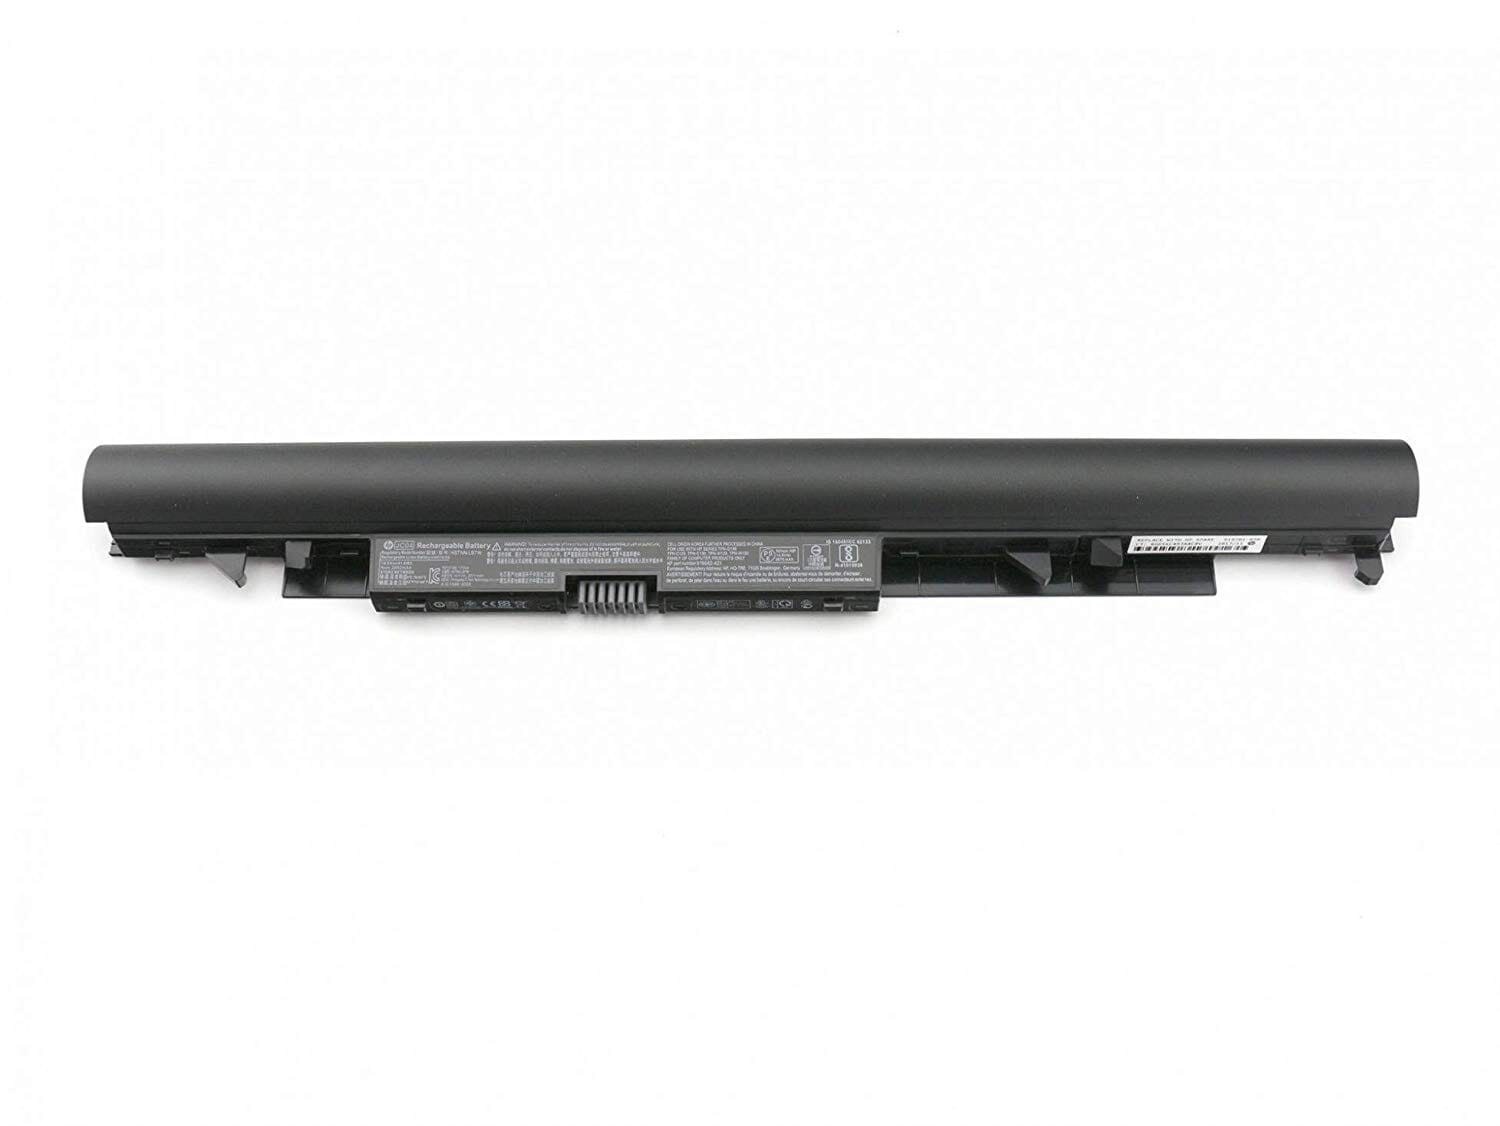 opschorten lint motor HP Laptop Accu 2670mAh voor HP 15-BW series, 240 G6, 245 G6, 250 G6, 255 G6  (919701-850) - ReplaceDirect.be